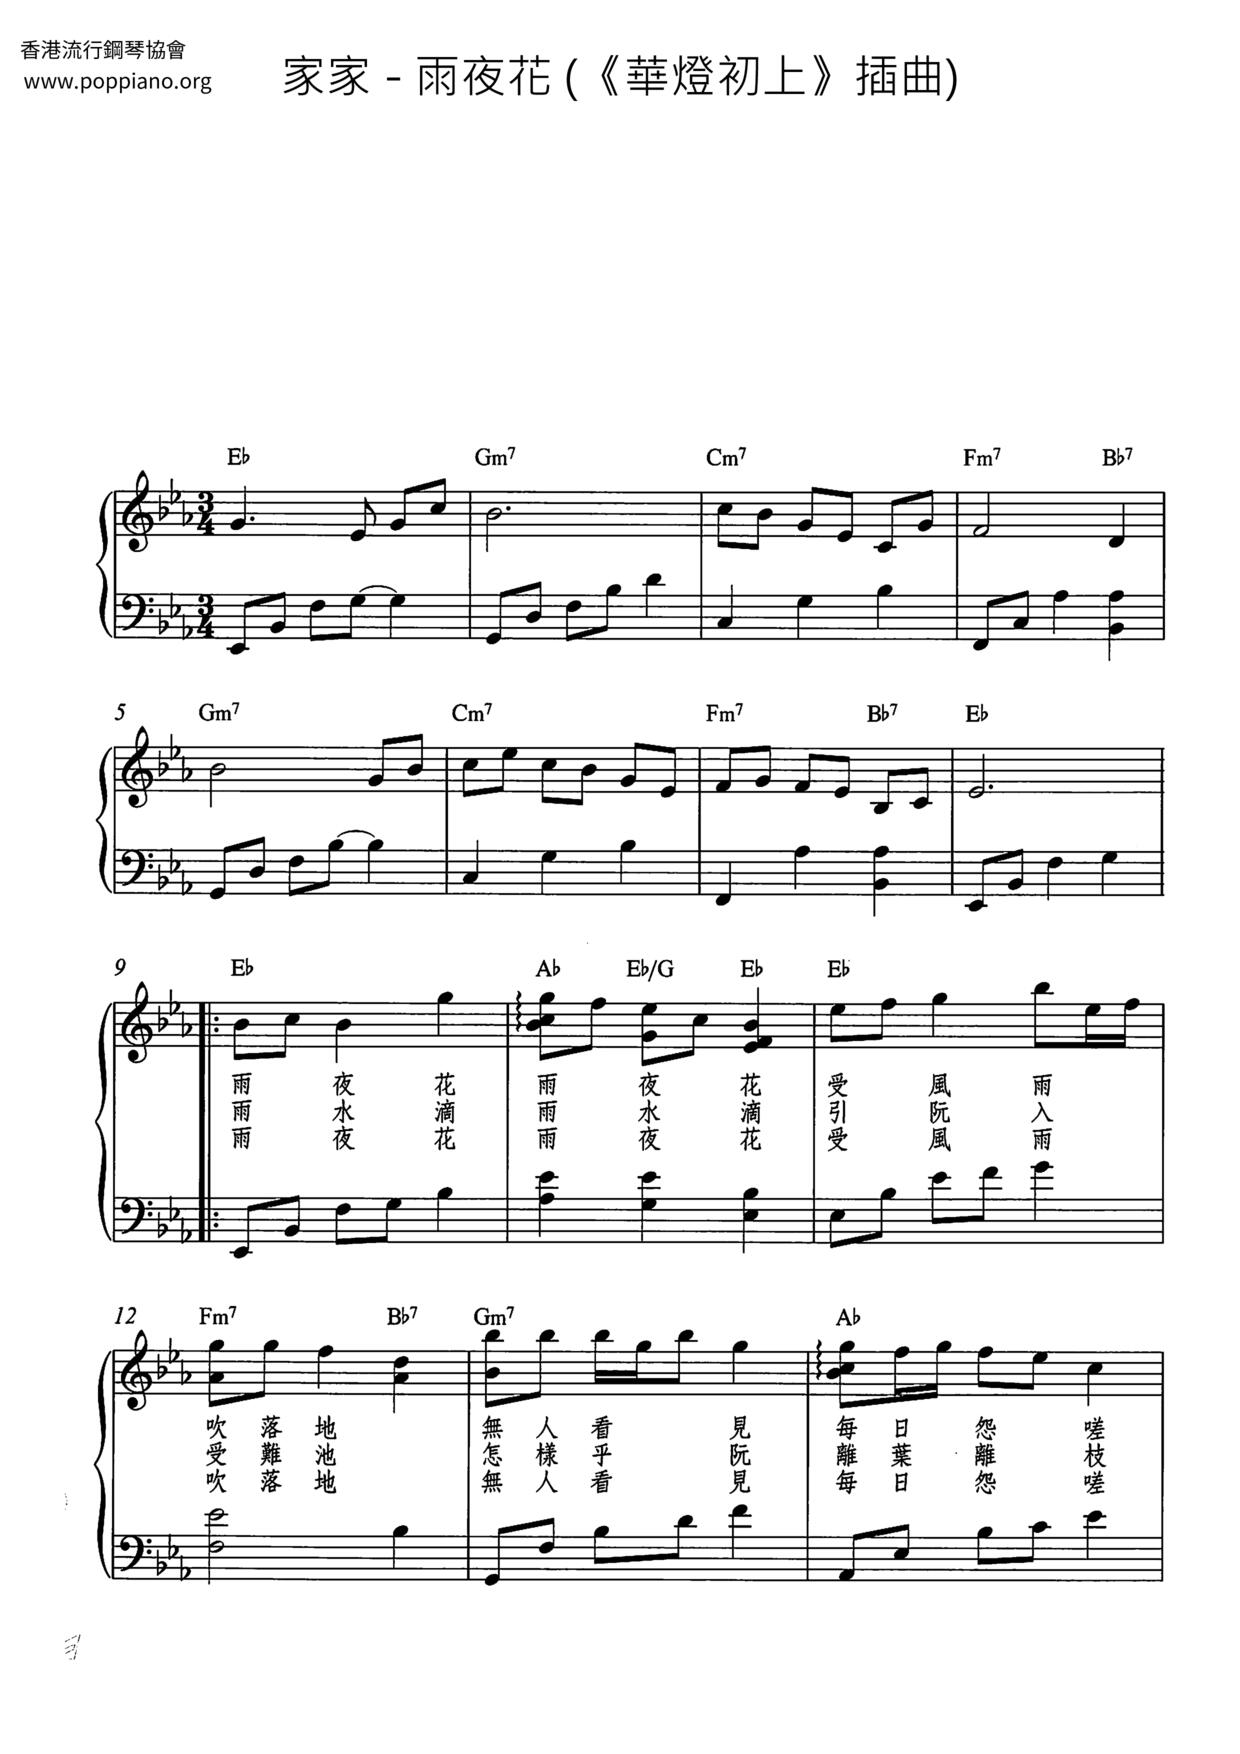 雨夜花 (《華燈初上》插曲)ピアノ譜